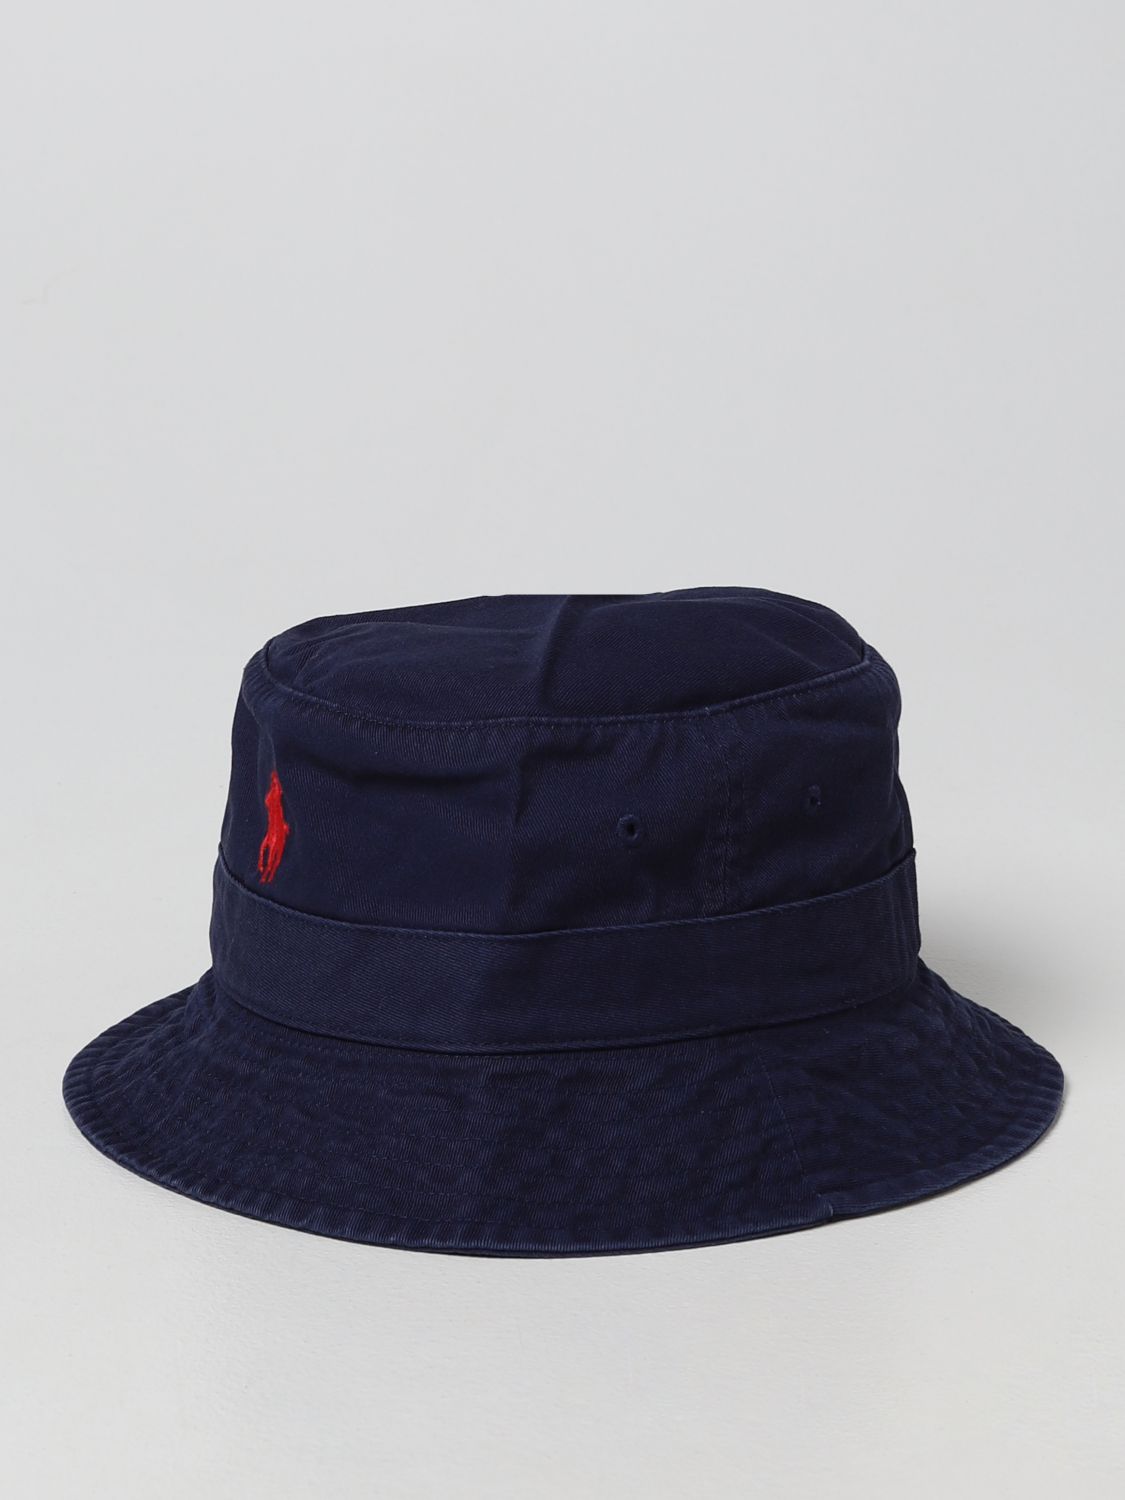 Hat Polo Ralph Lauren: Polo Ralph Lauren hat for men navy 1